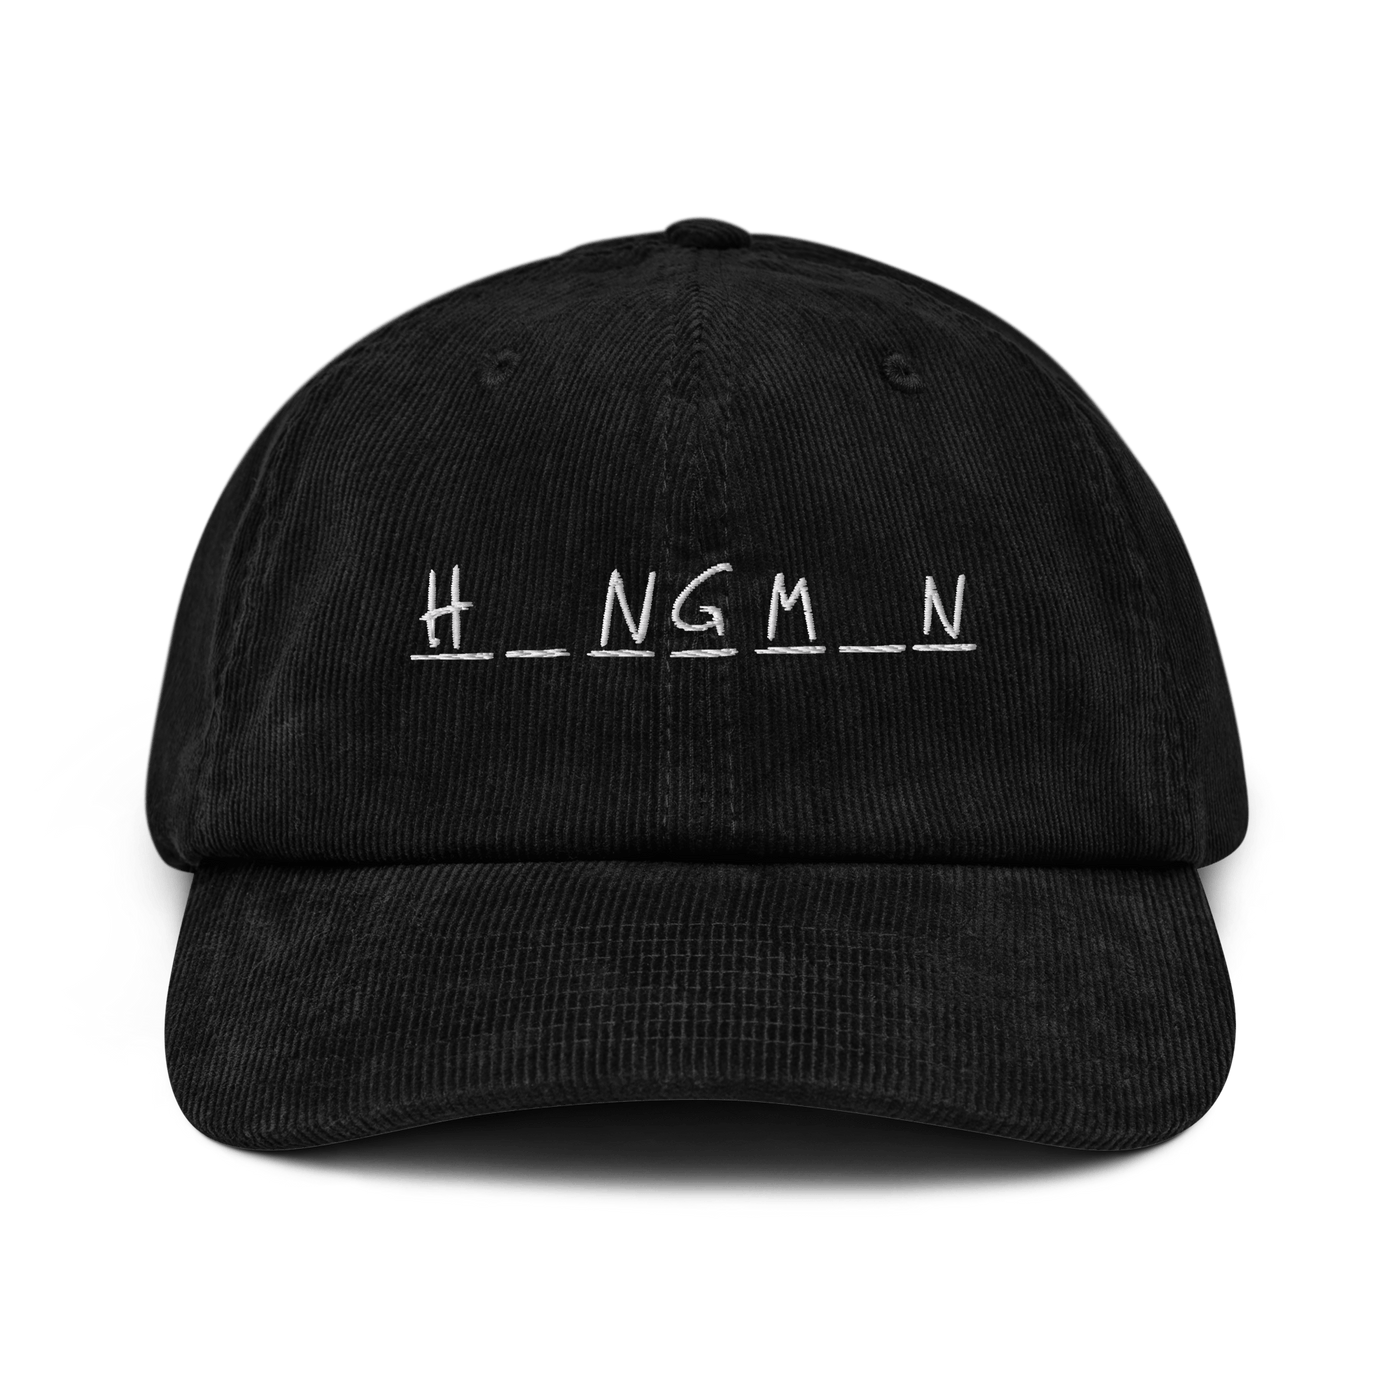 Hangman Corduroy hat - Camel - - Just Another Cap Store